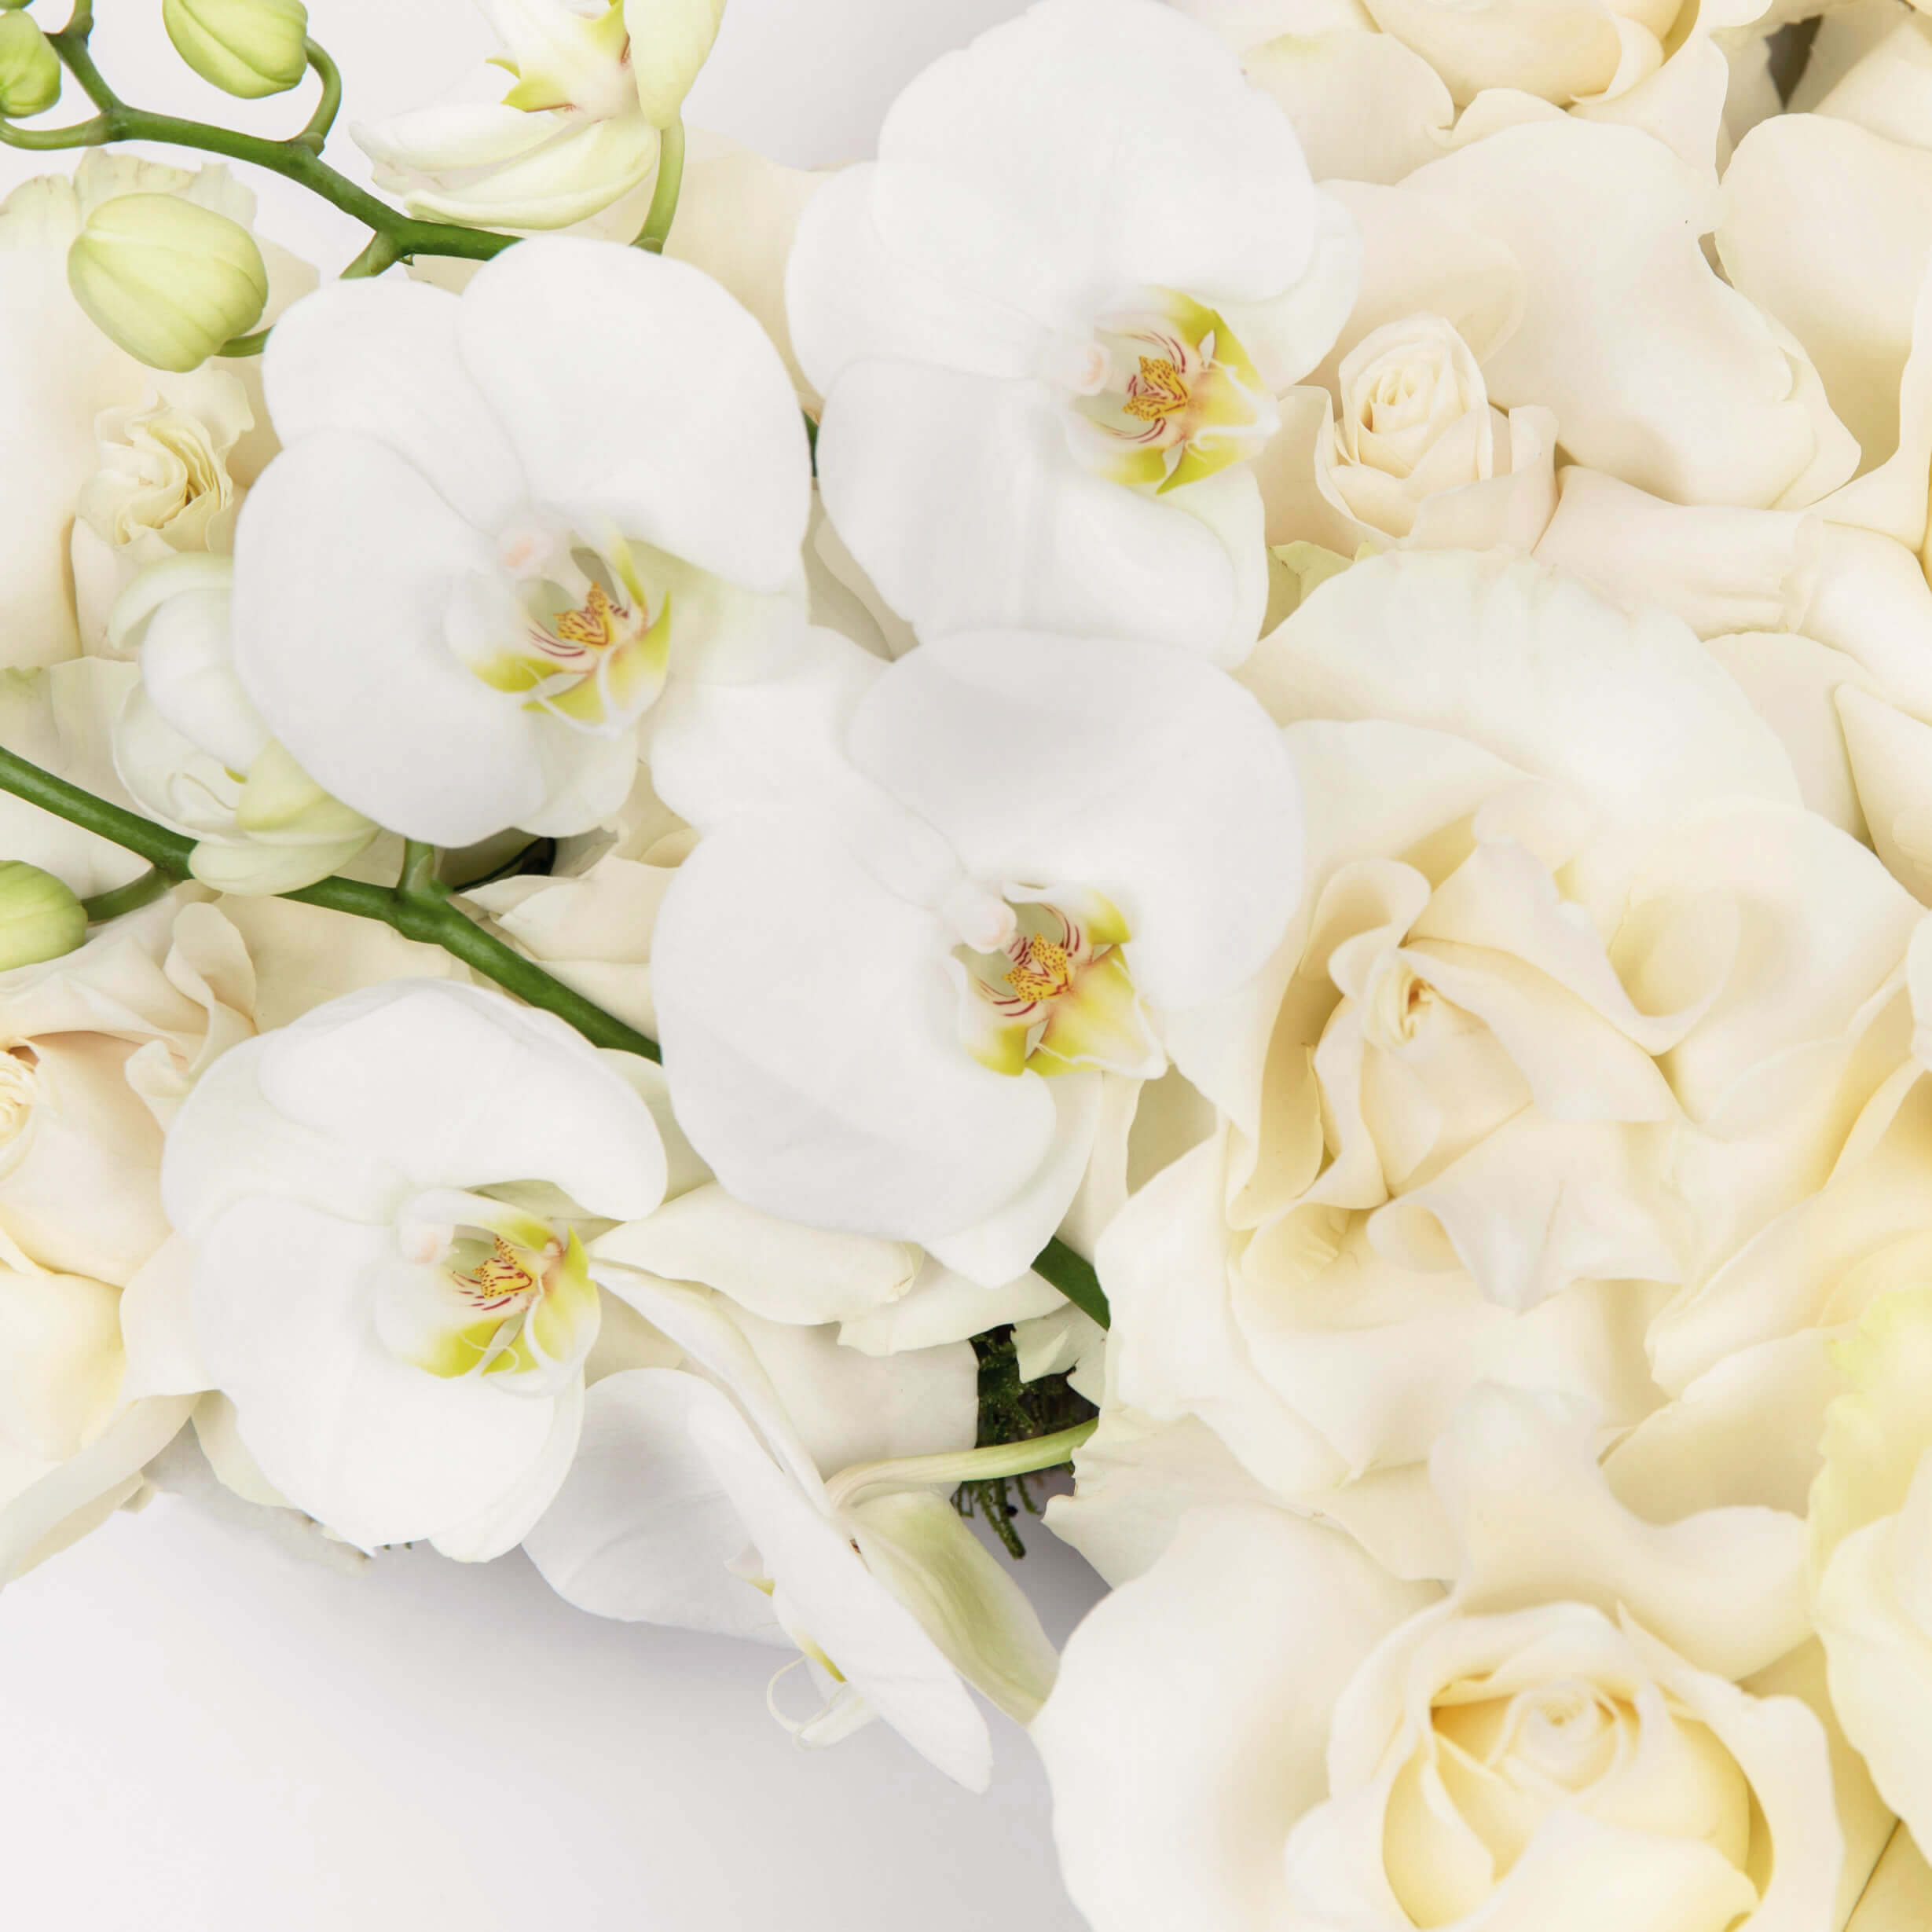 Cruce cu trandafiri albi si phalaenopsis